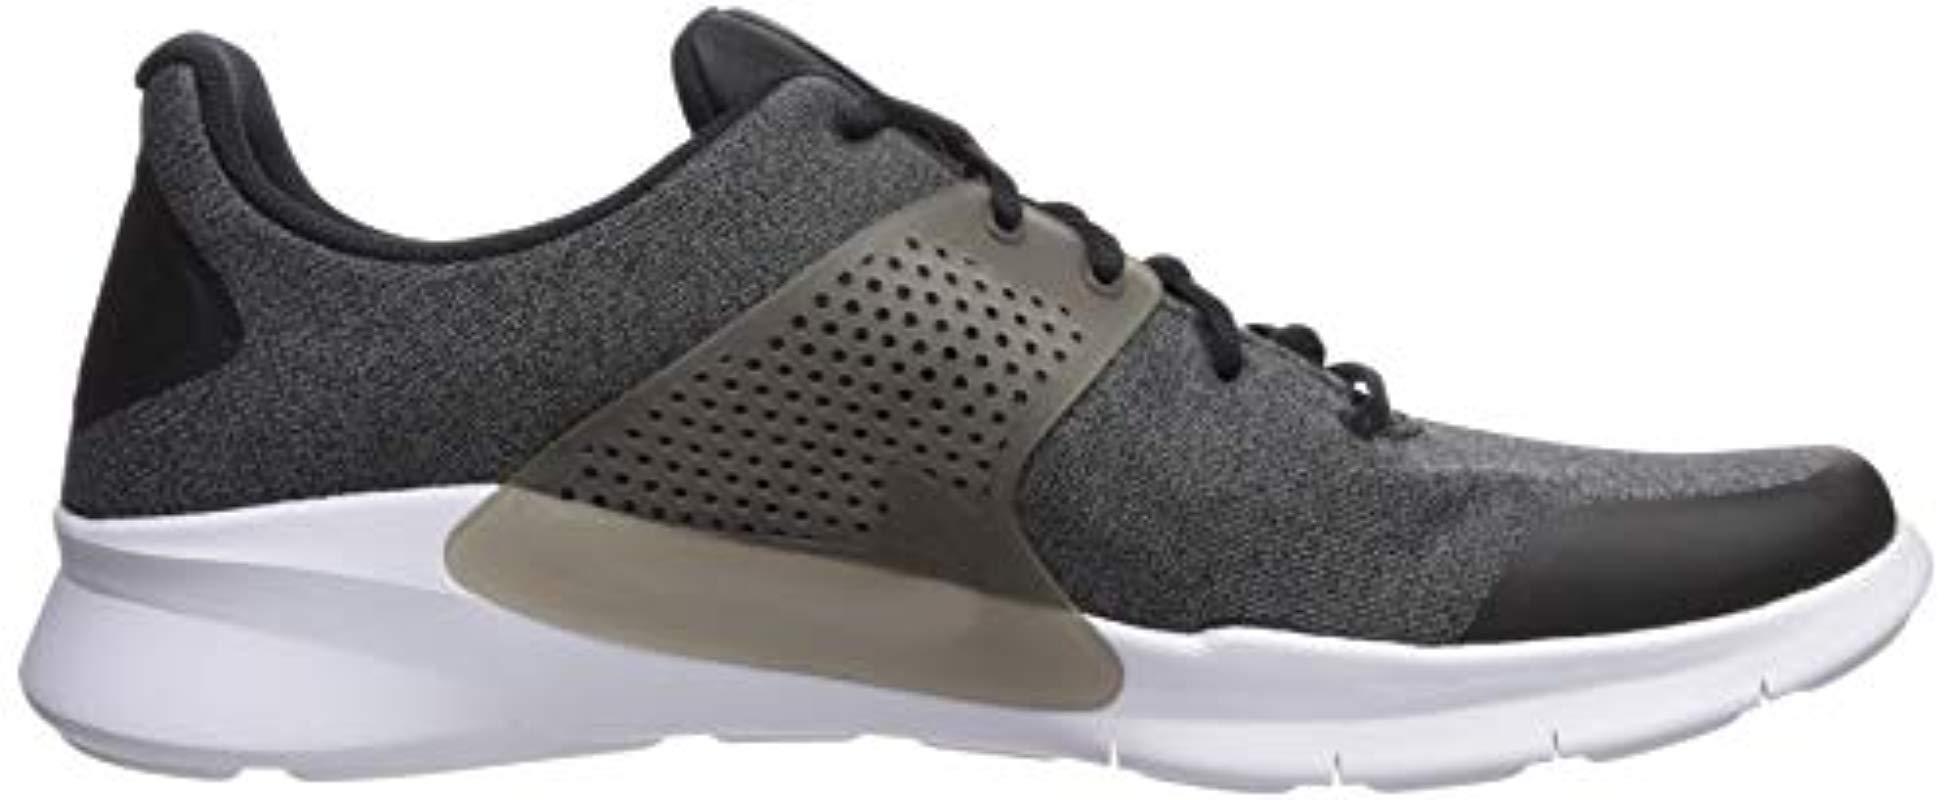 Nike Arrowz Sneaker in Black/Black/White (Black) for Men - Lyst